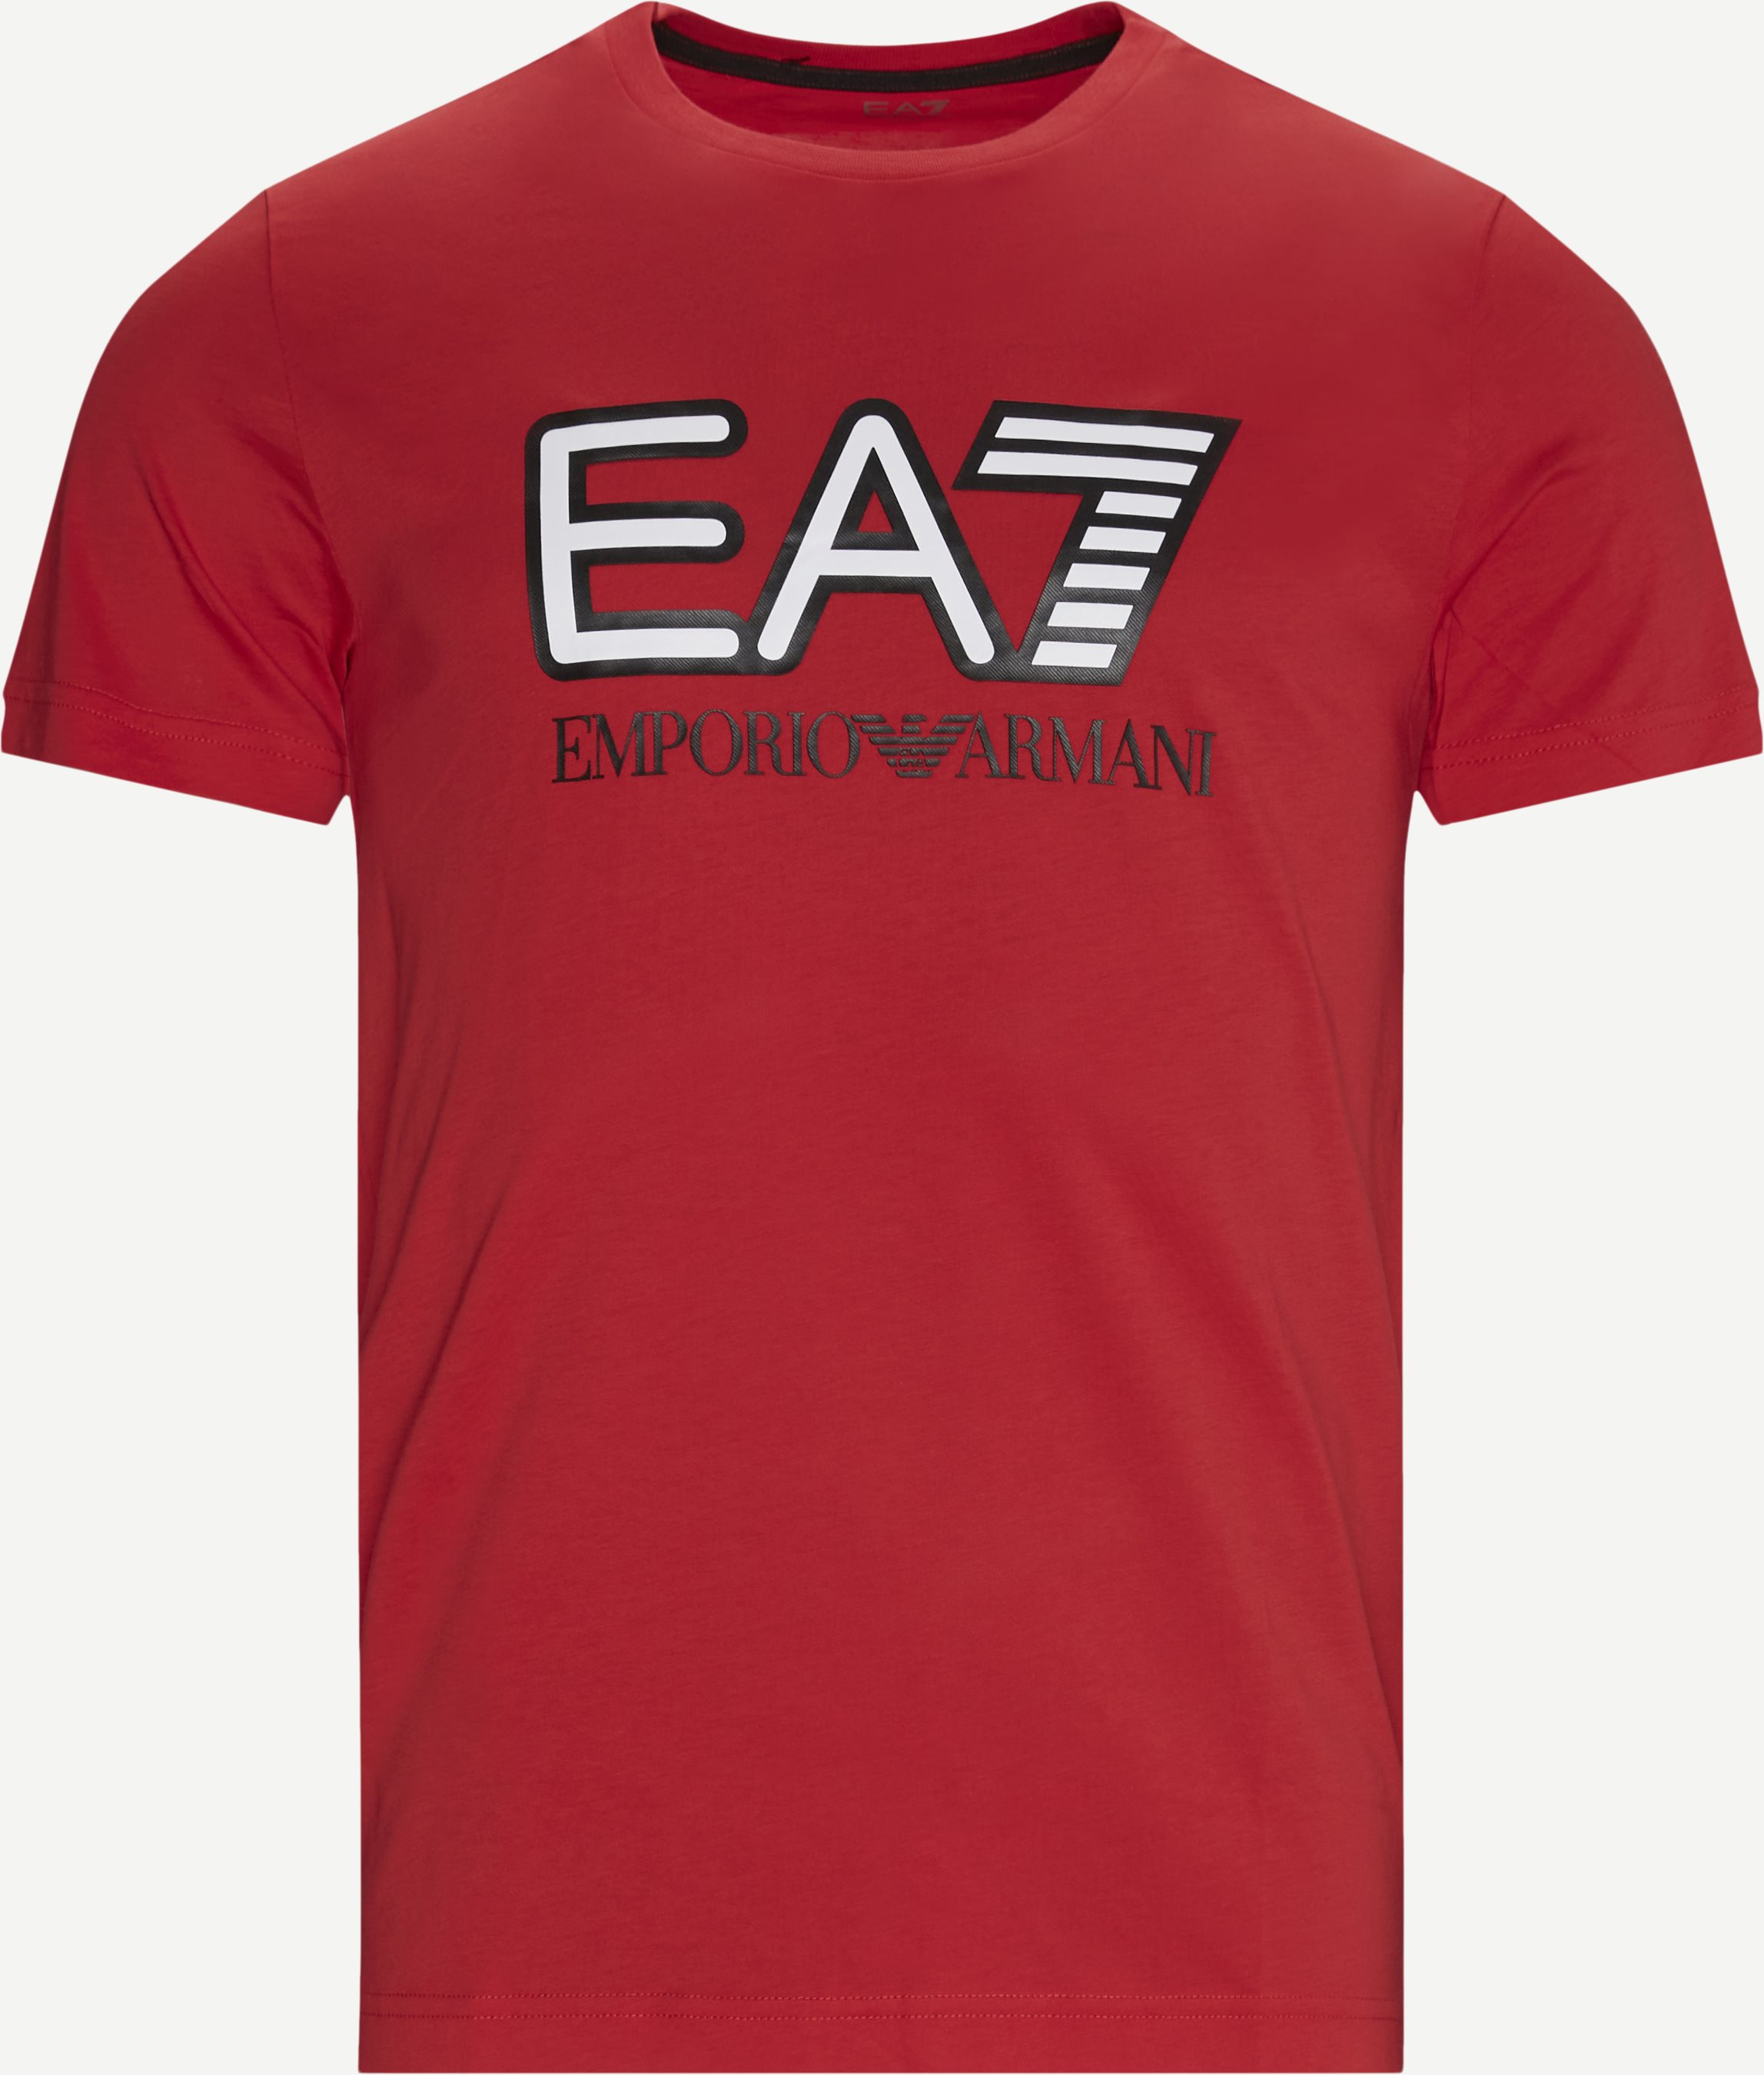 T-Shirt mit PJM9Z-Logo - T-Shirts - Regular fit - Rot